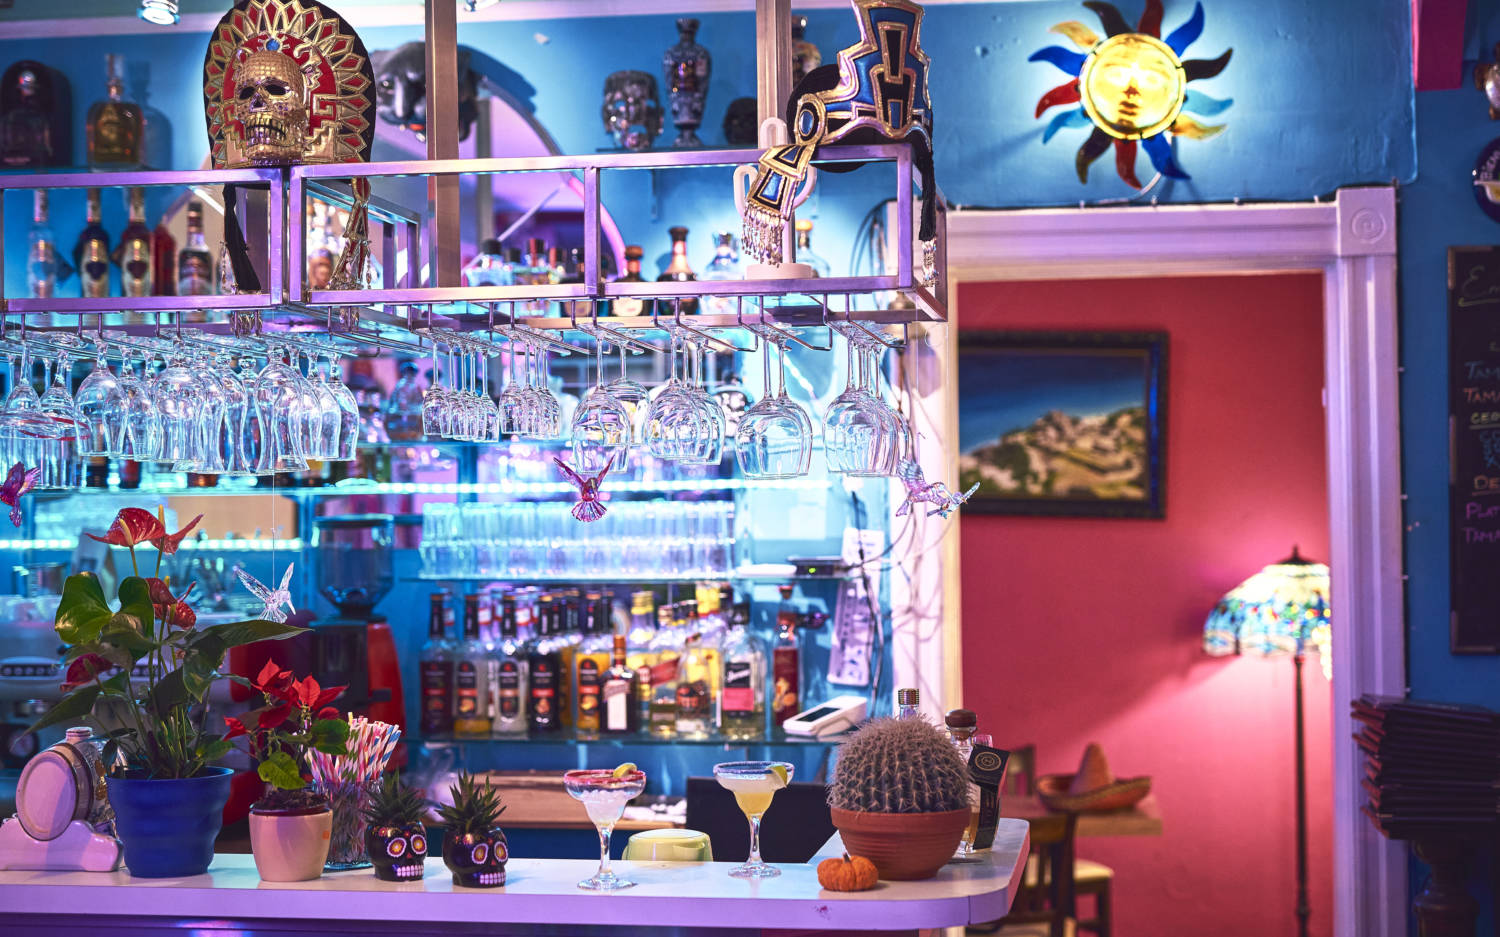 Kakteen, Neon-Schriftzüge und Sombreros: authentische Dekoration im Restaurant Café México / ©Marc Sill